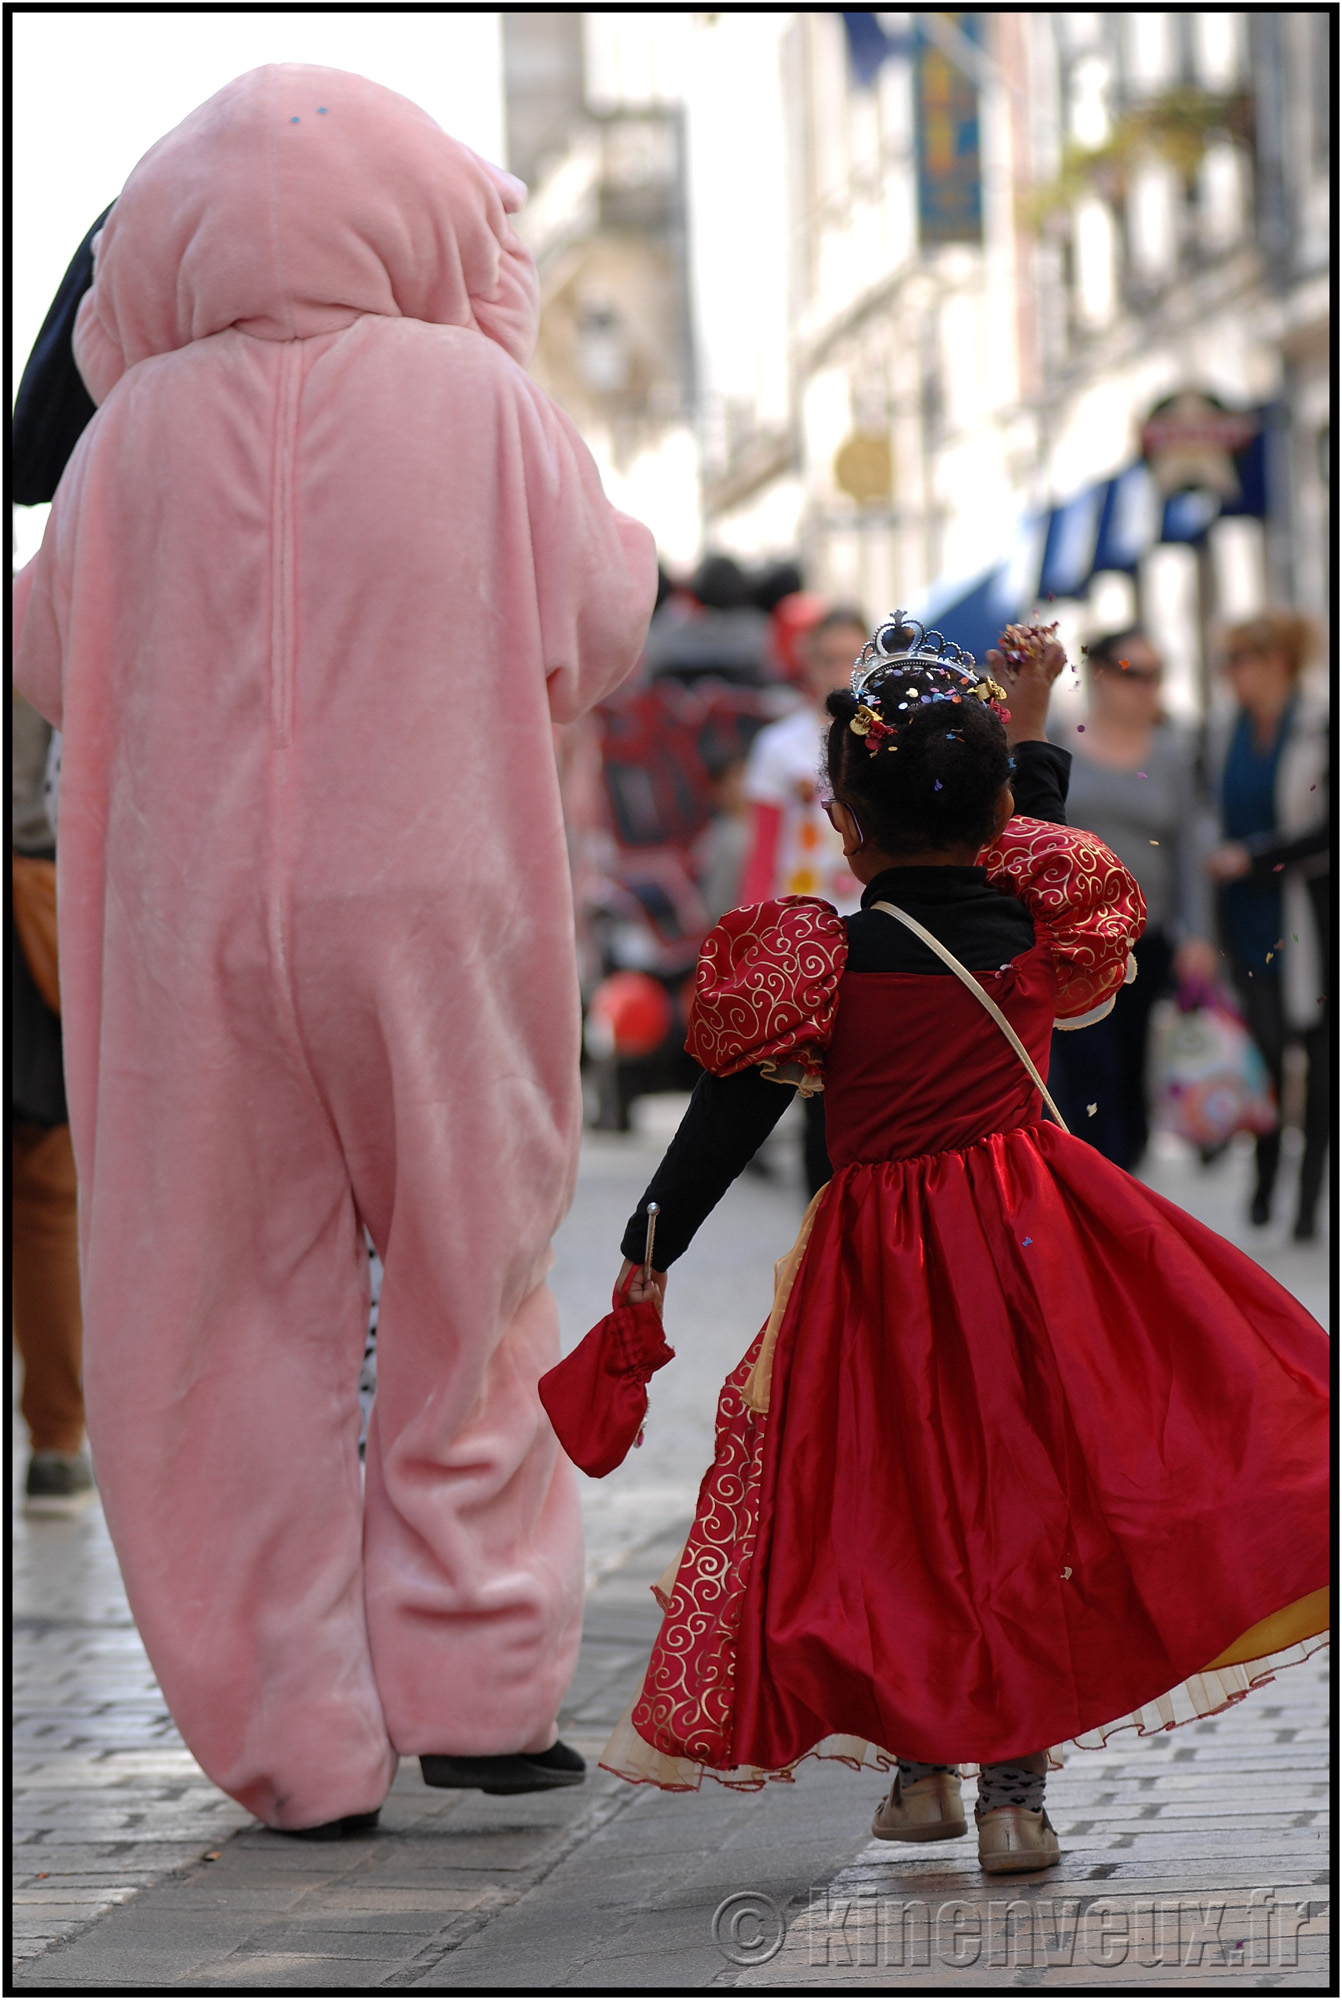 kinenveux_55_carnaval2015lr.jpg - Carnaval des Enfants 2015 - La Rochelle